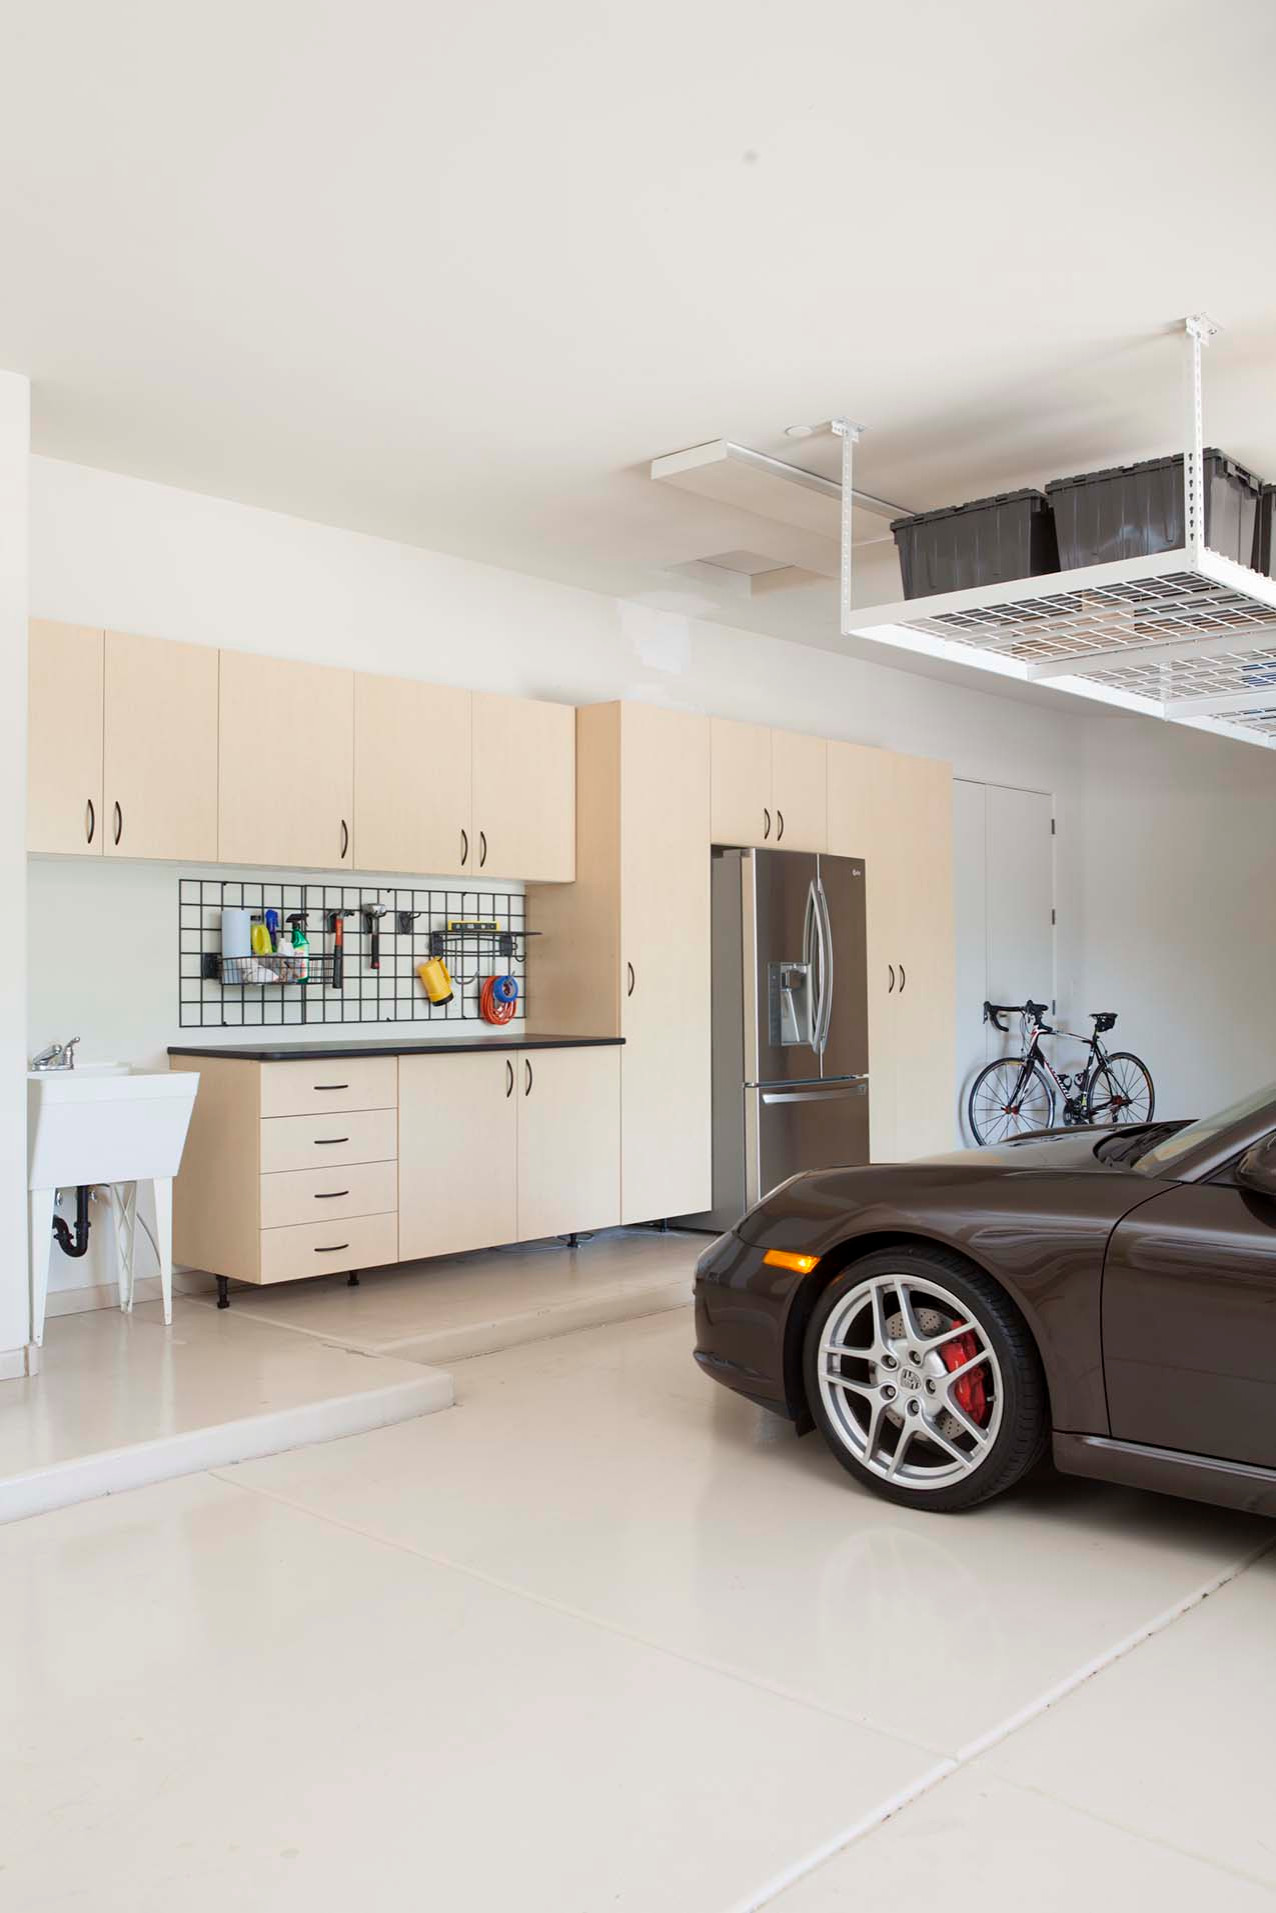 Сверхразумный гараж: Renault свяжет дом и авто искусственным интеллектом